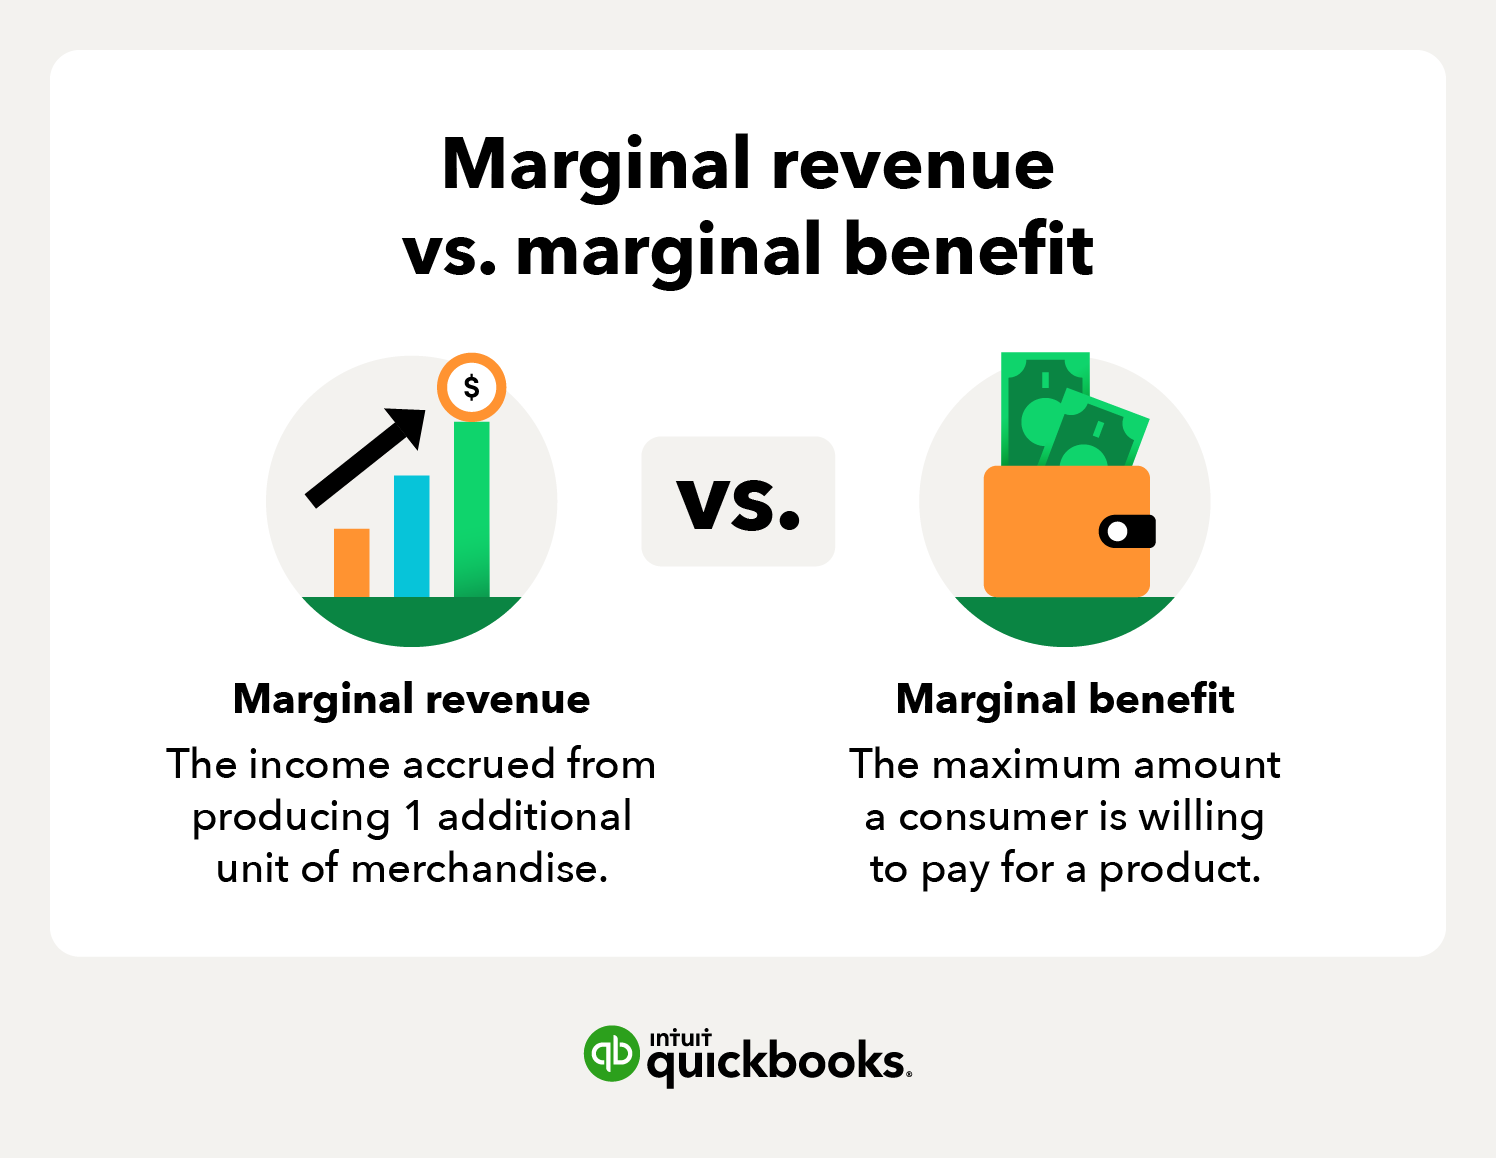 Comparison of marginal revenue versus marginal benefit